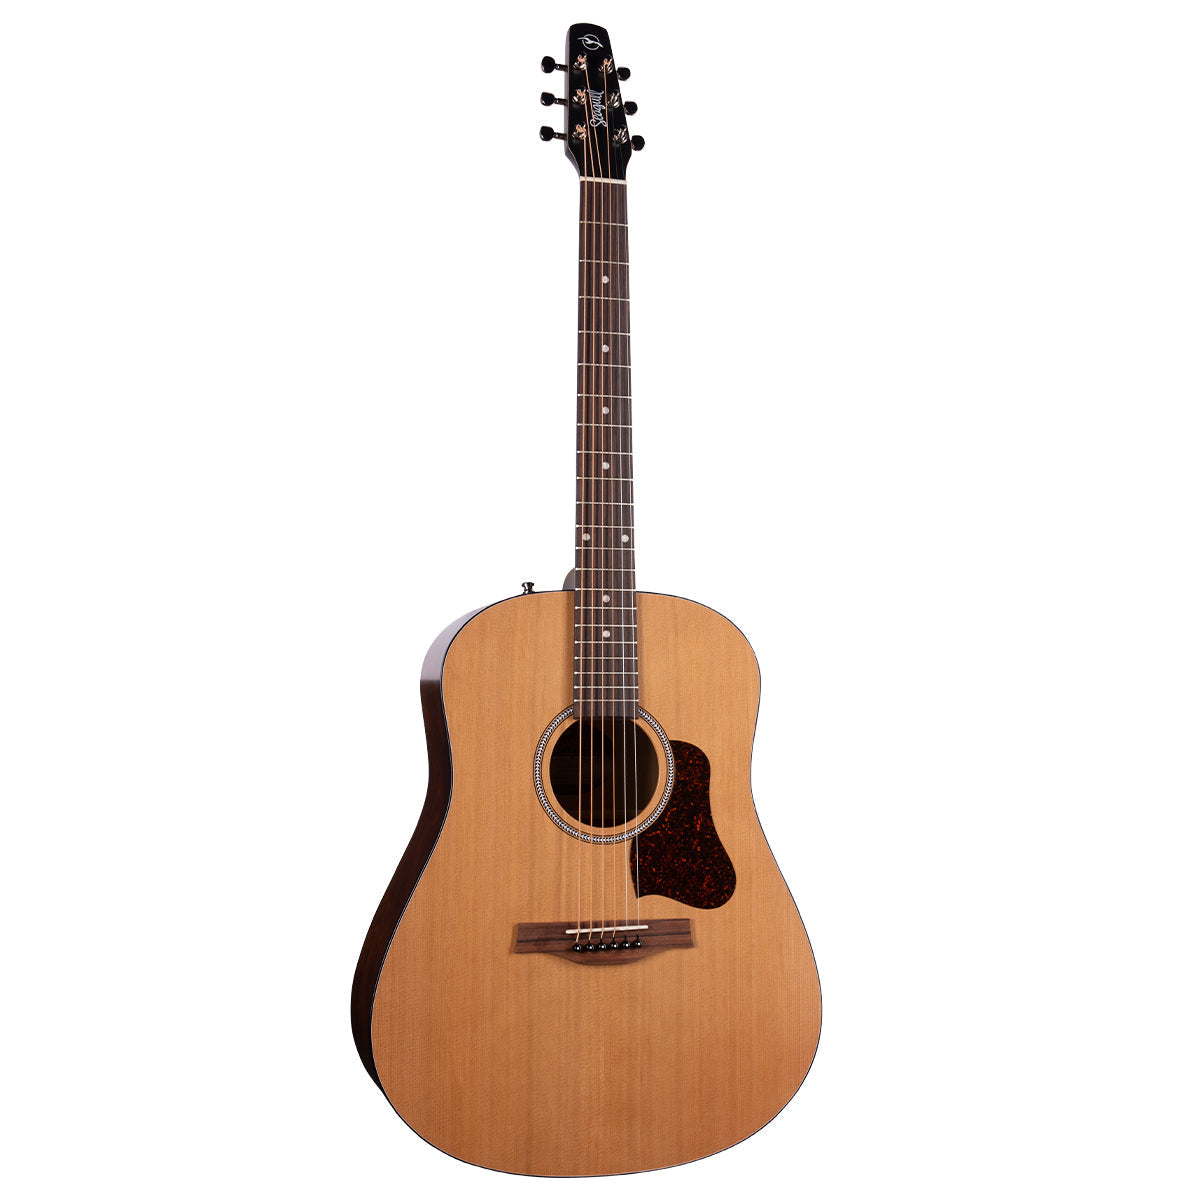 Seagull S6 Original Slim Acoustic Guitar ~ Natural, Acoustic Guitar for sale at Richards Guitars.